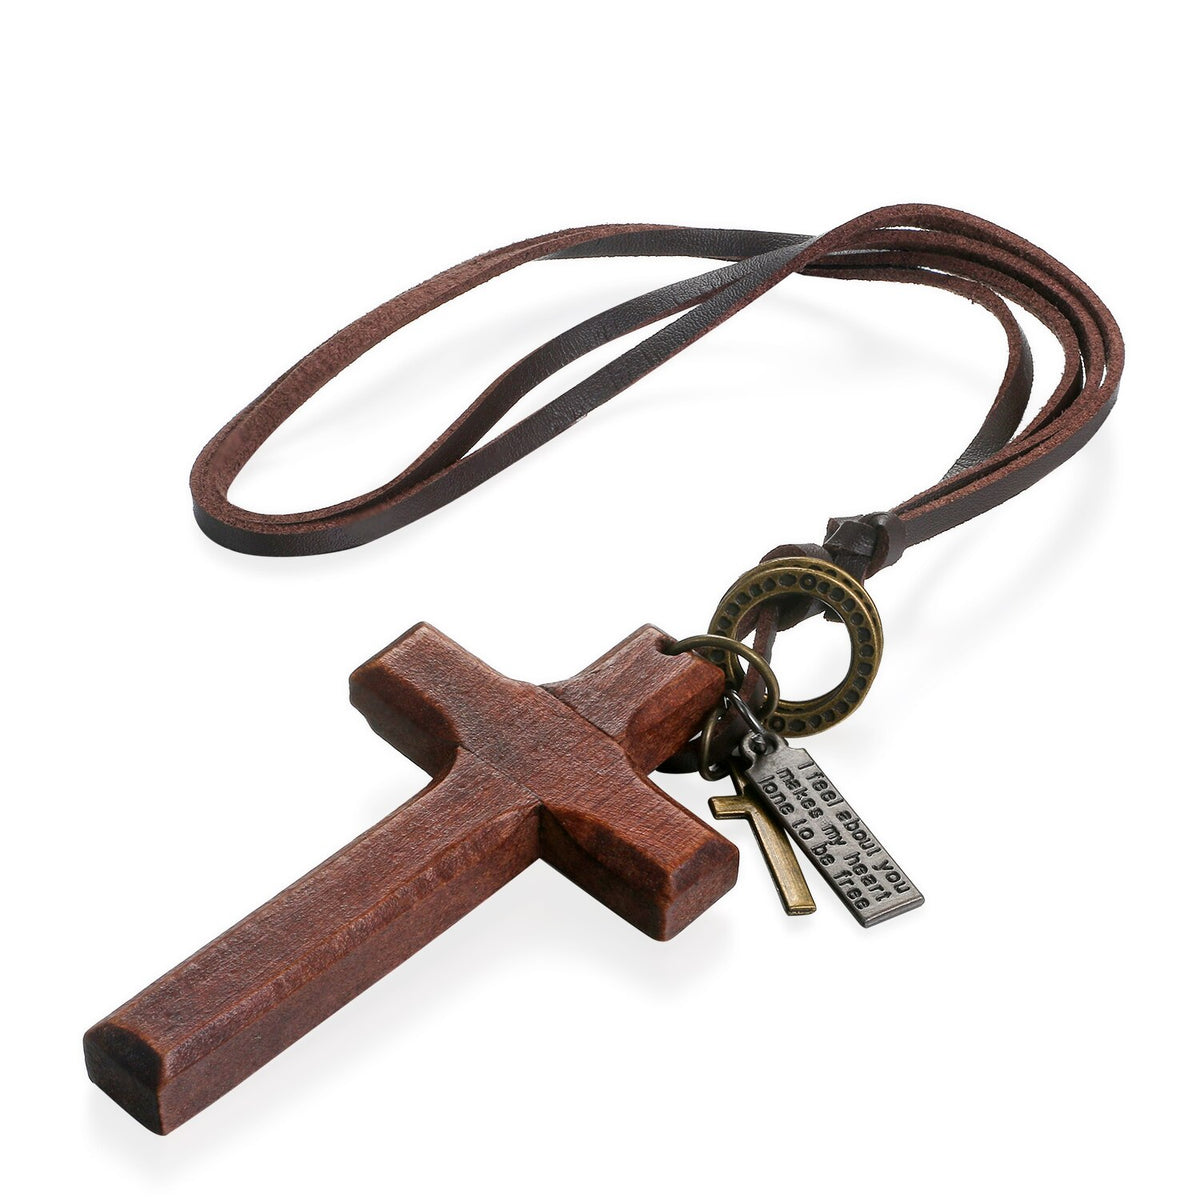 Vintage Wood Cross Adjustable Leather Necklace Brown & Black Set